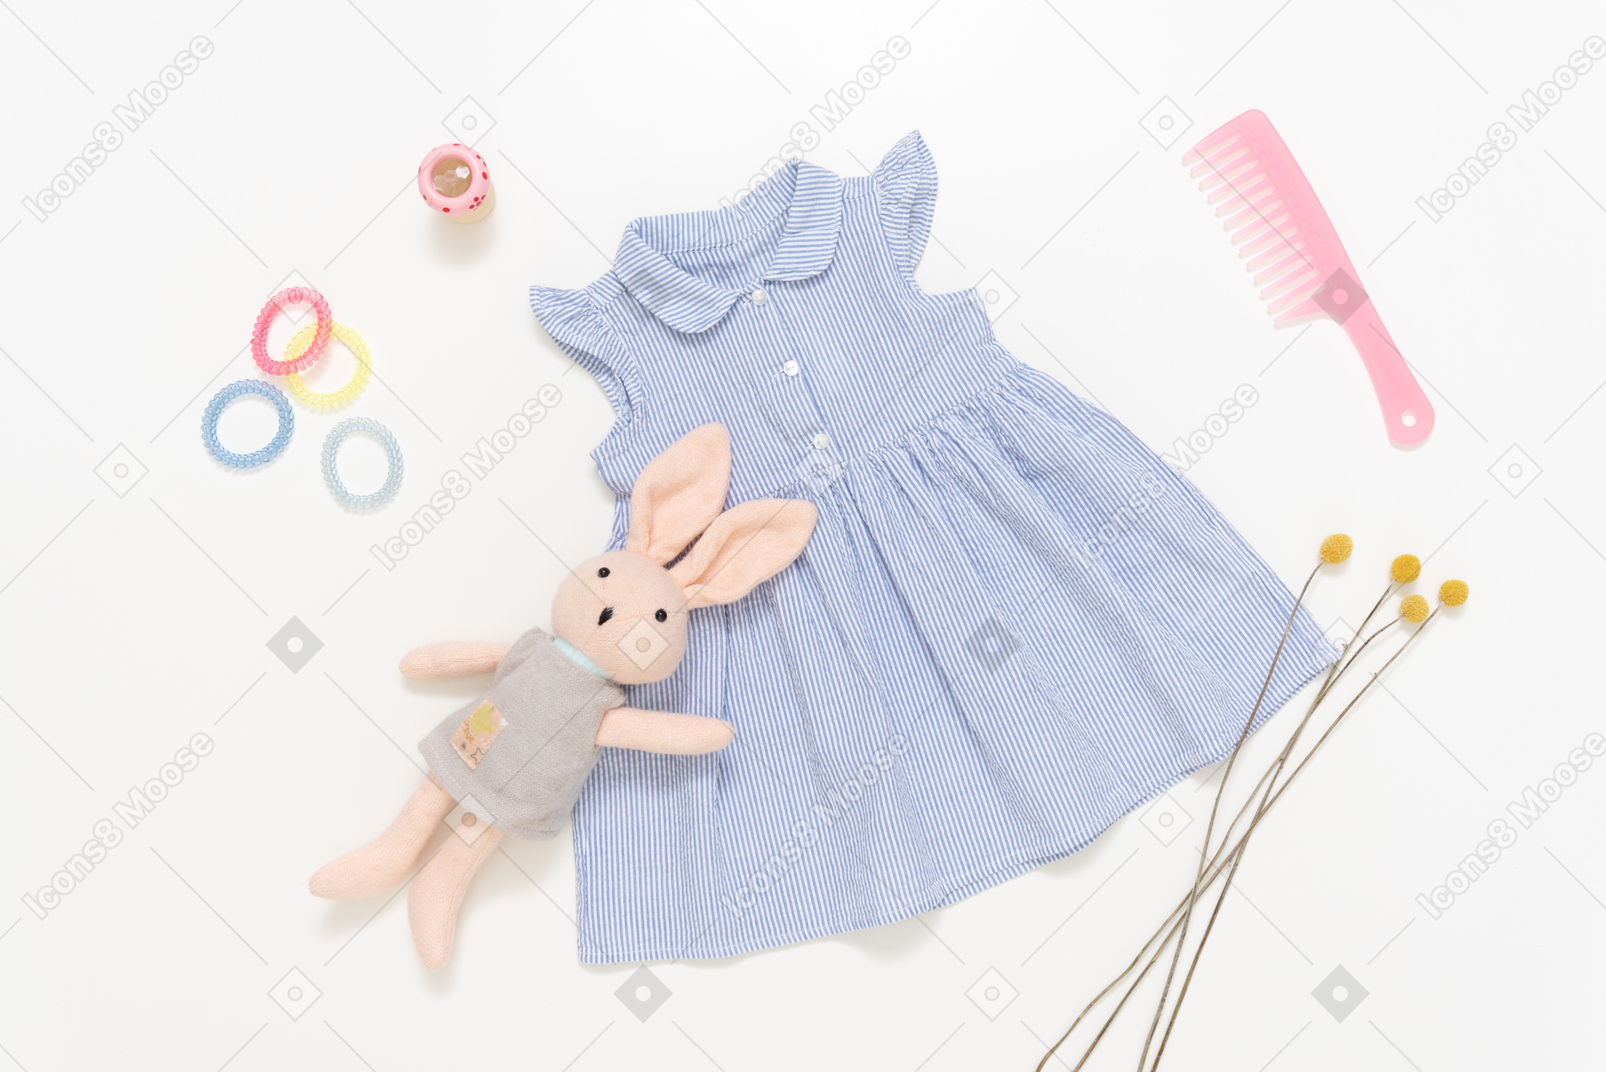 子供の女の子の青いドレス、ぬいぐるみ、ピンクのプラスチック製のヘアブラシとアクセサリー